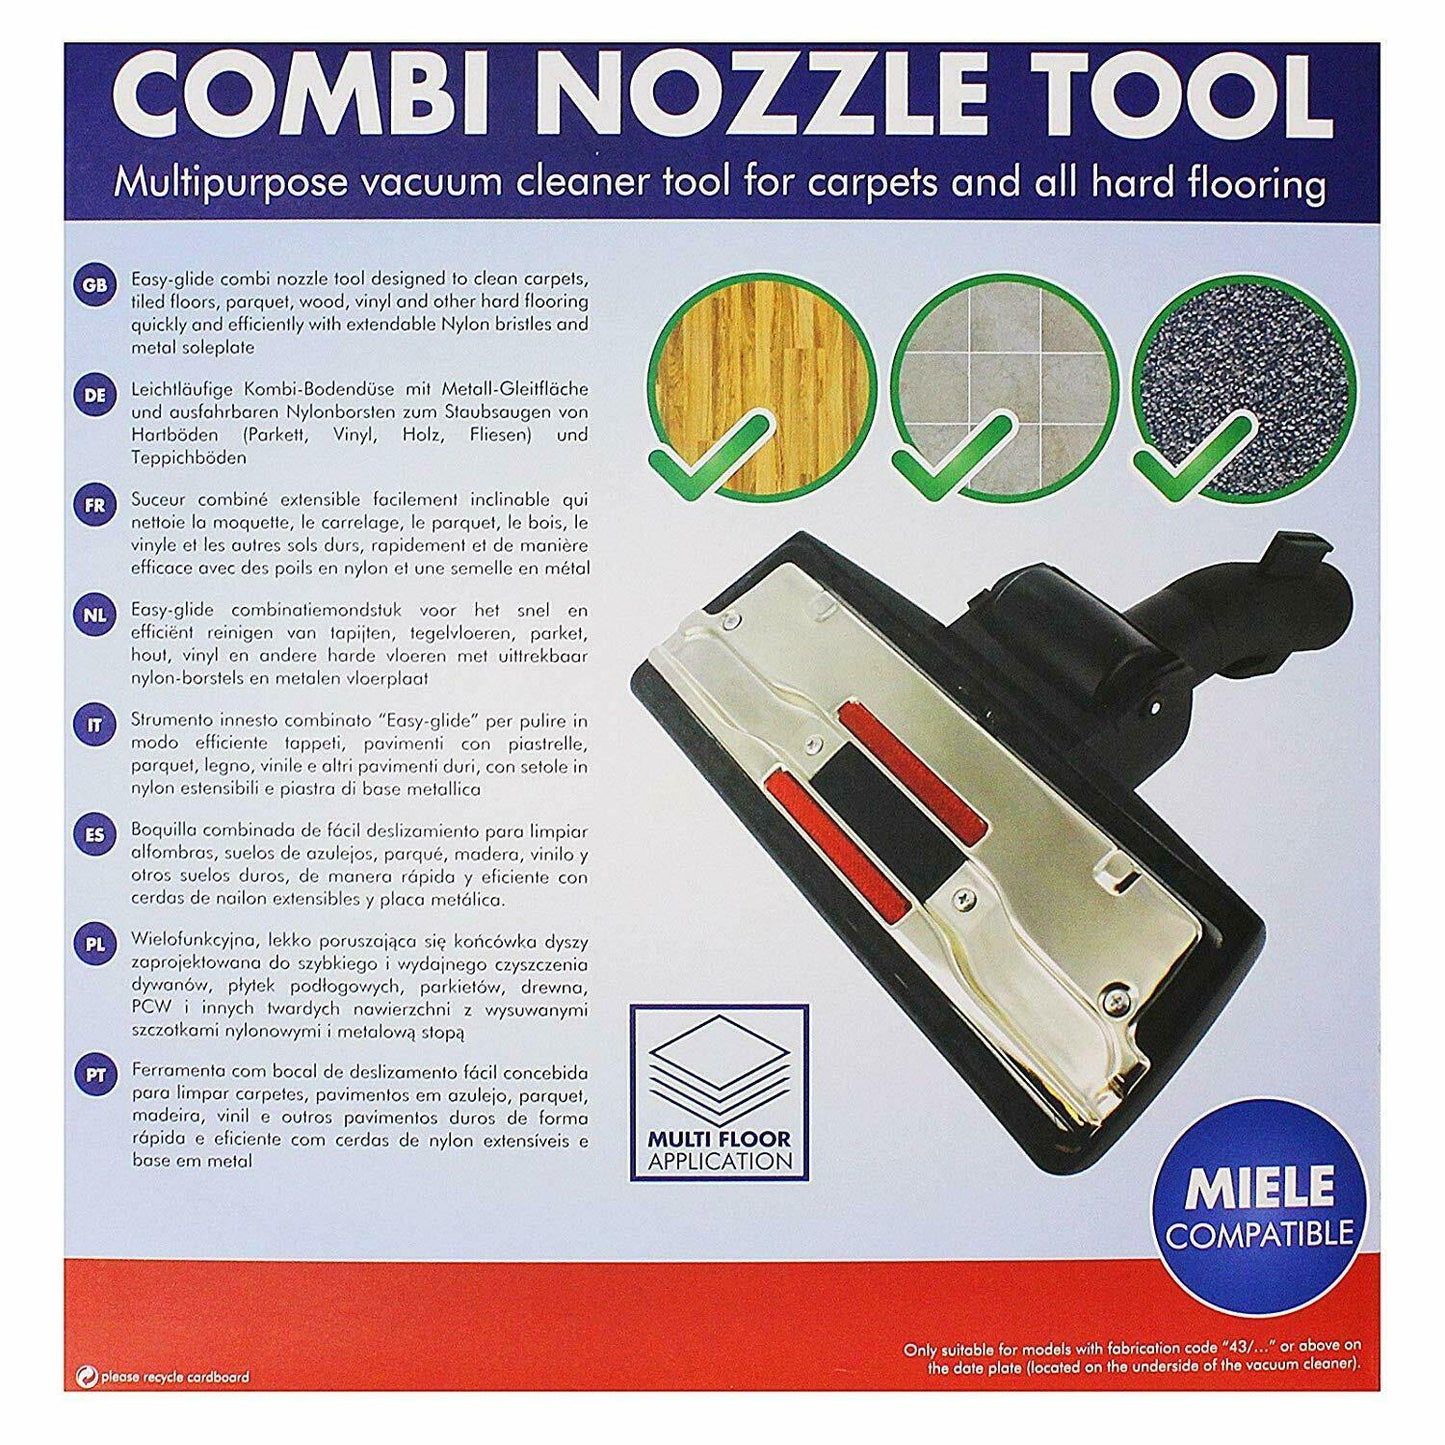 Wheel Vacuum Cleaner Floor Head Tool For Nilfisk GD5 BV100 GD910 VP300 Backpack Sparesbarn